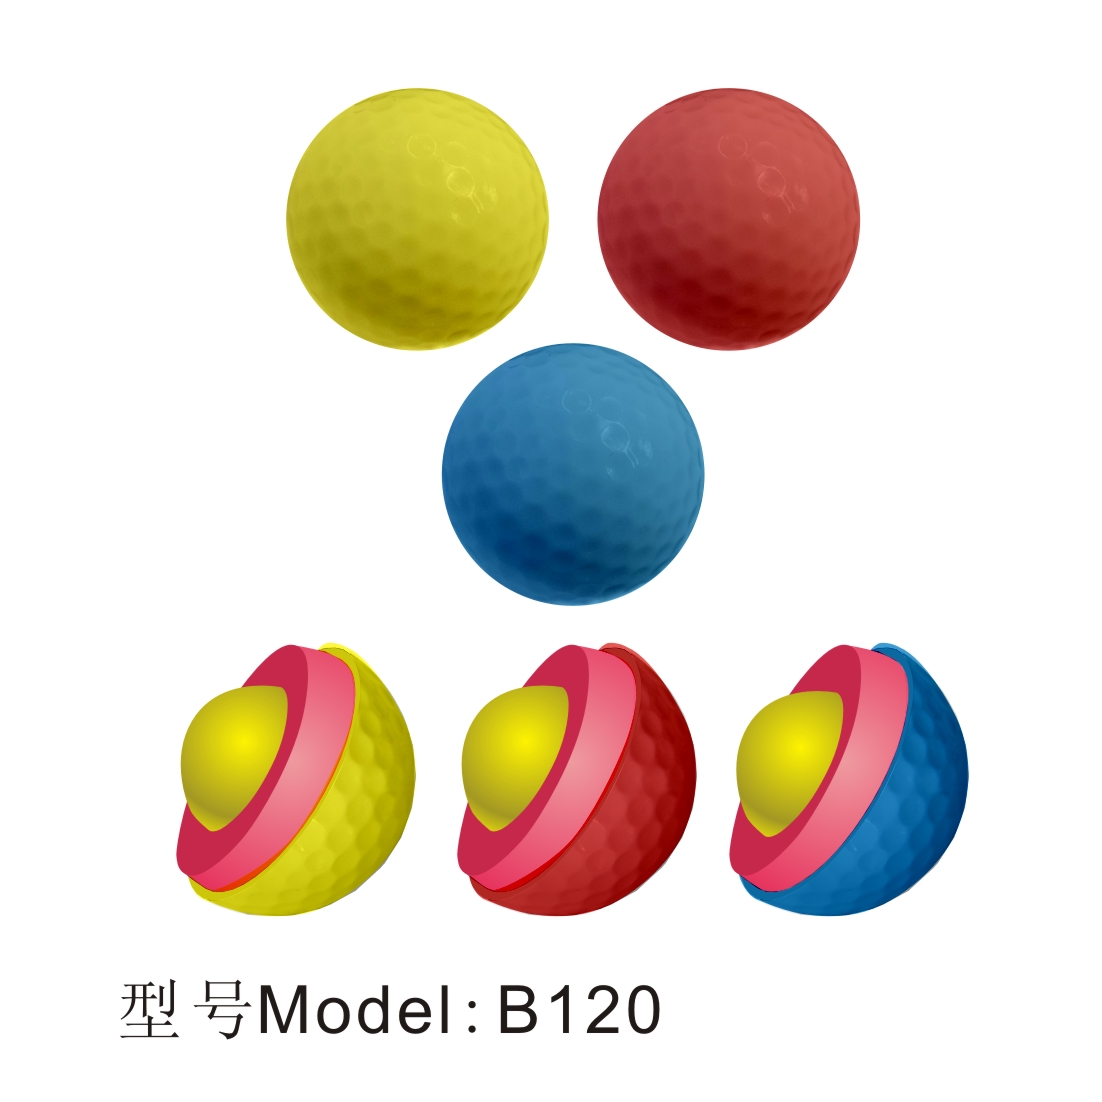 深圳市百事特凯盾高尔夫球厂家百事特凯盾高尔夫球 水晶 彩色 练习比赛球 golf高尔夫配件用品球